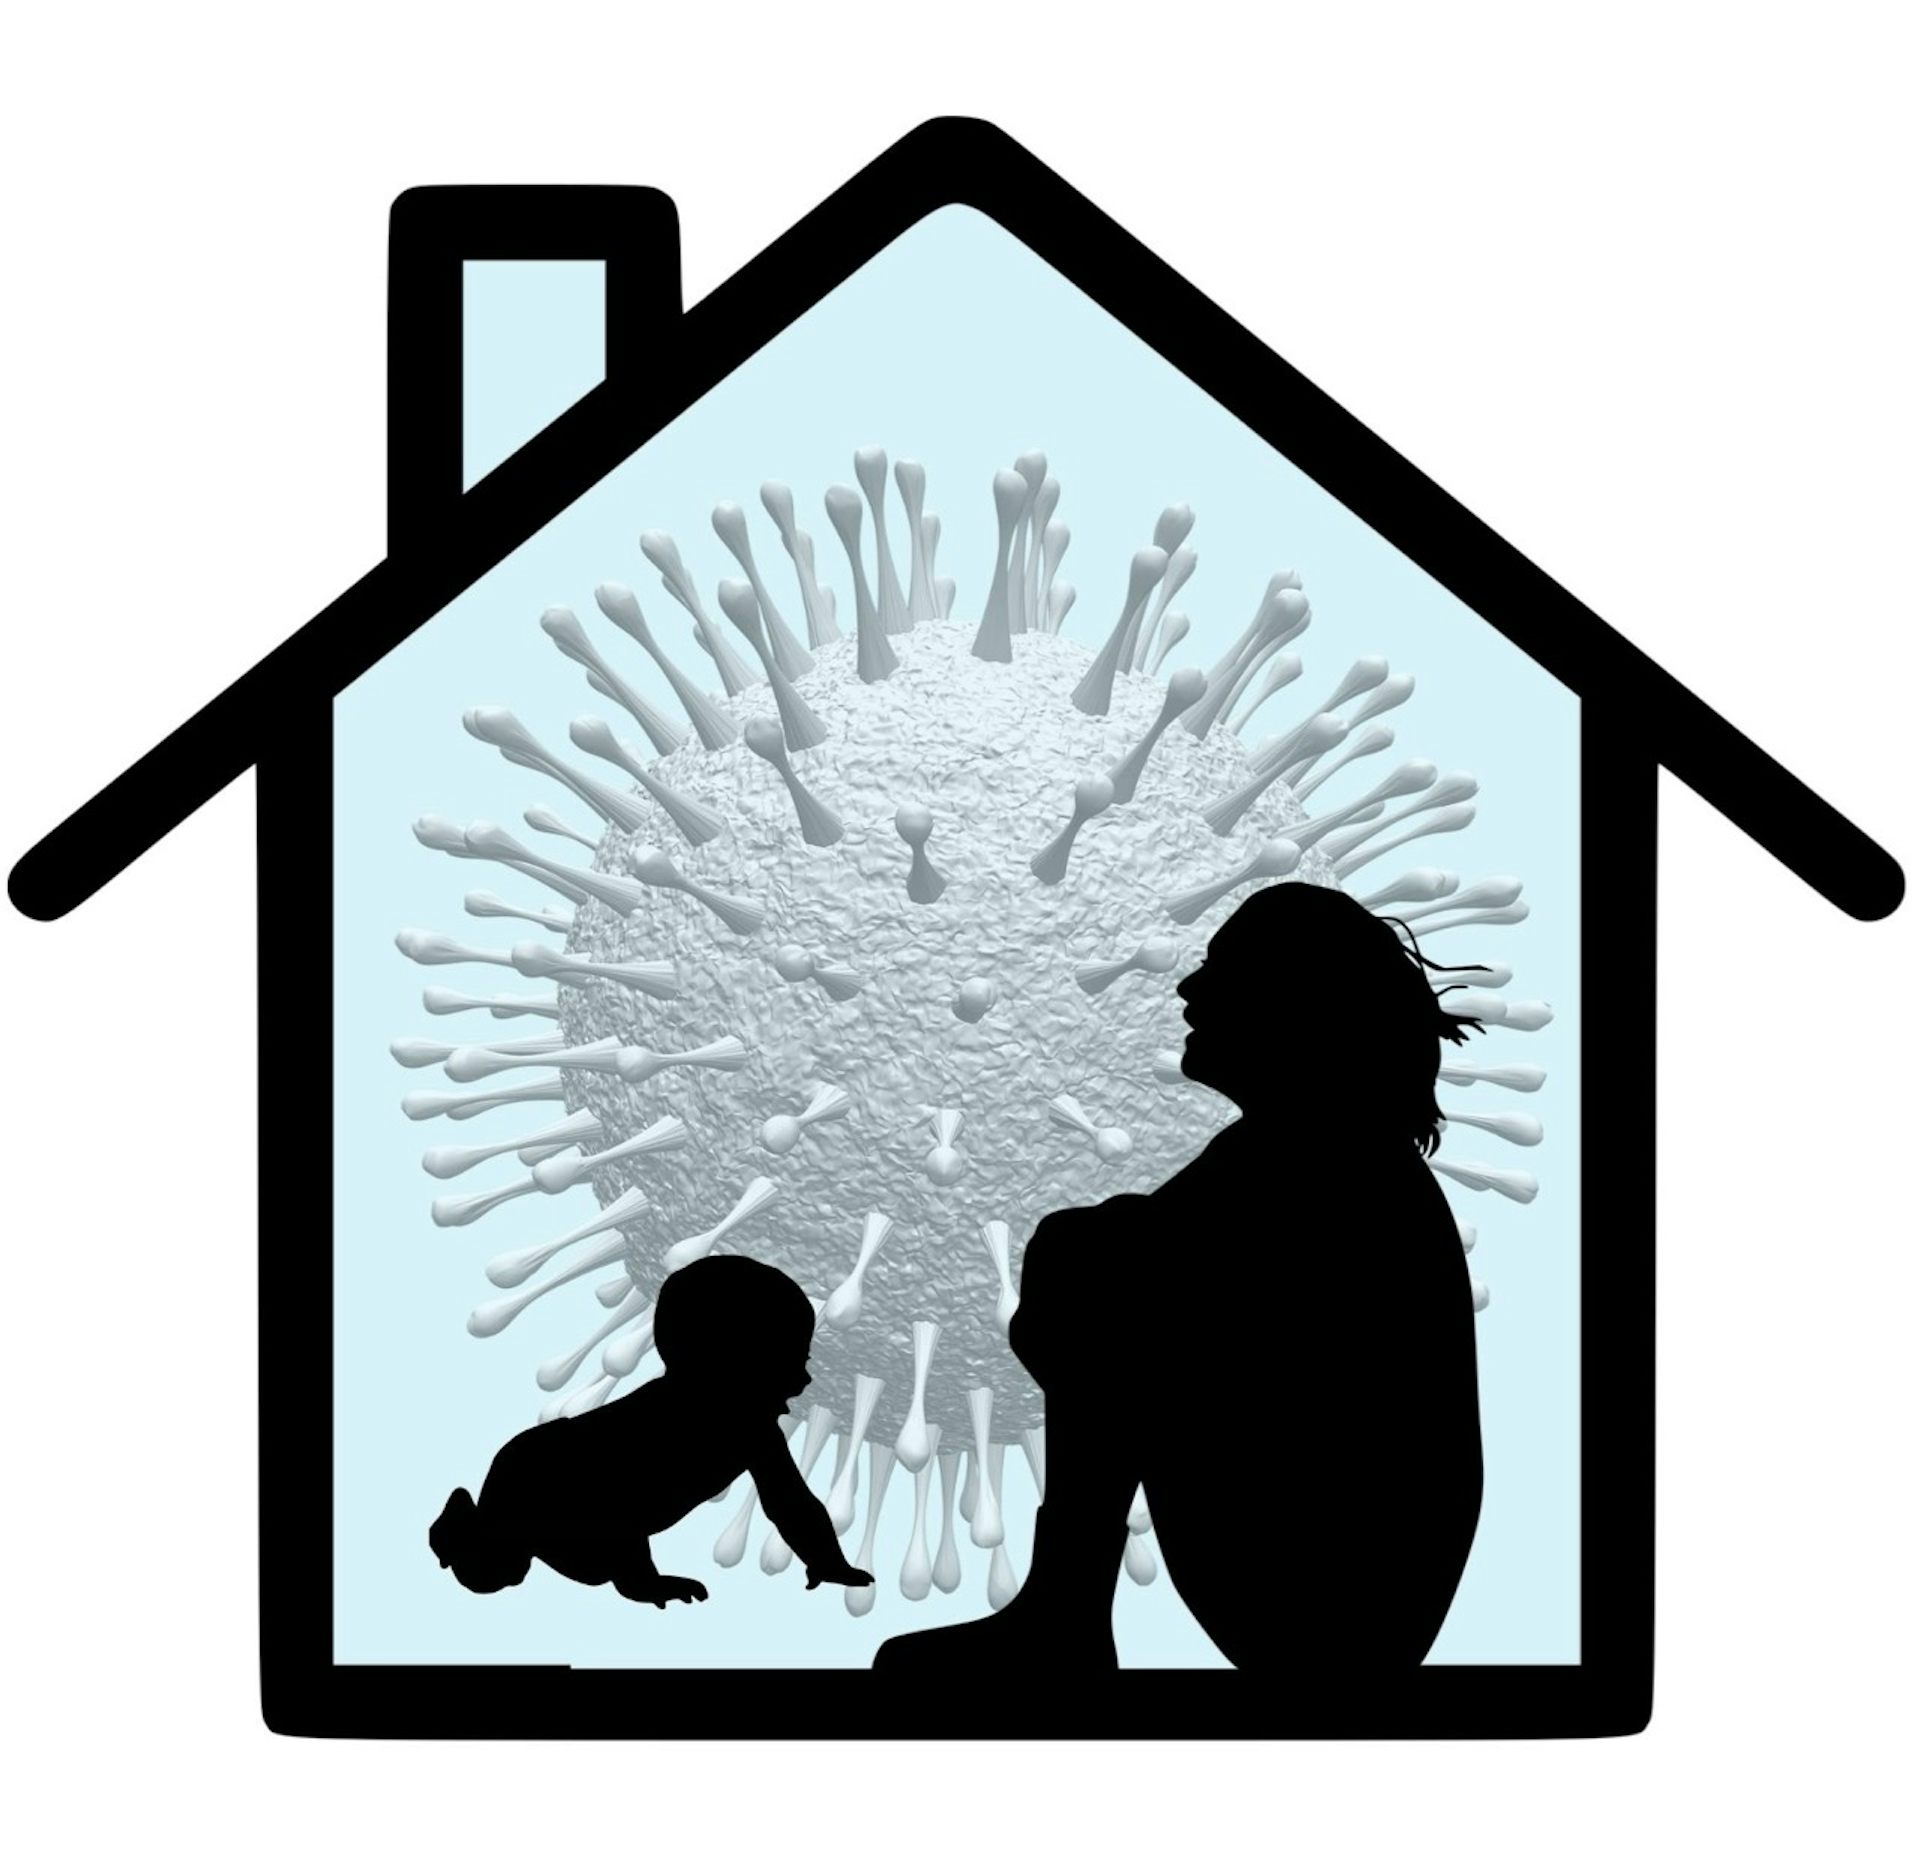 Siluetas de una mujer sentada, abrazada a sus rodillas, y un bebé gateando contra el contorno de una casa y una imagen de un coronavirus